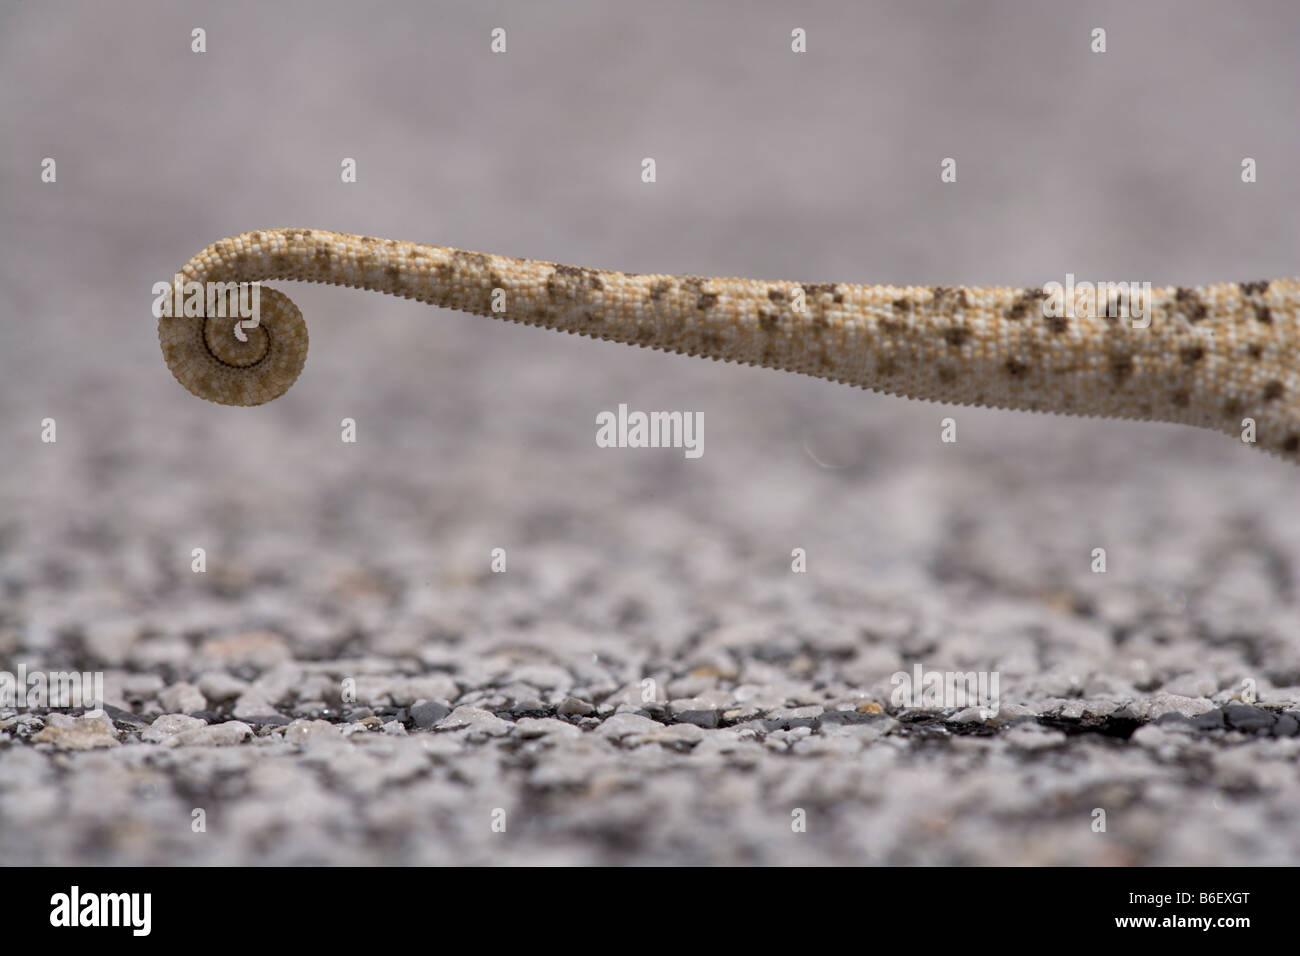 Africa Namibia Caprivi Strip dettaglio della coda del collo parzializzatore camaleonte Chamaeleo dilepis attraversando a piedi Autostrada Foto Stock